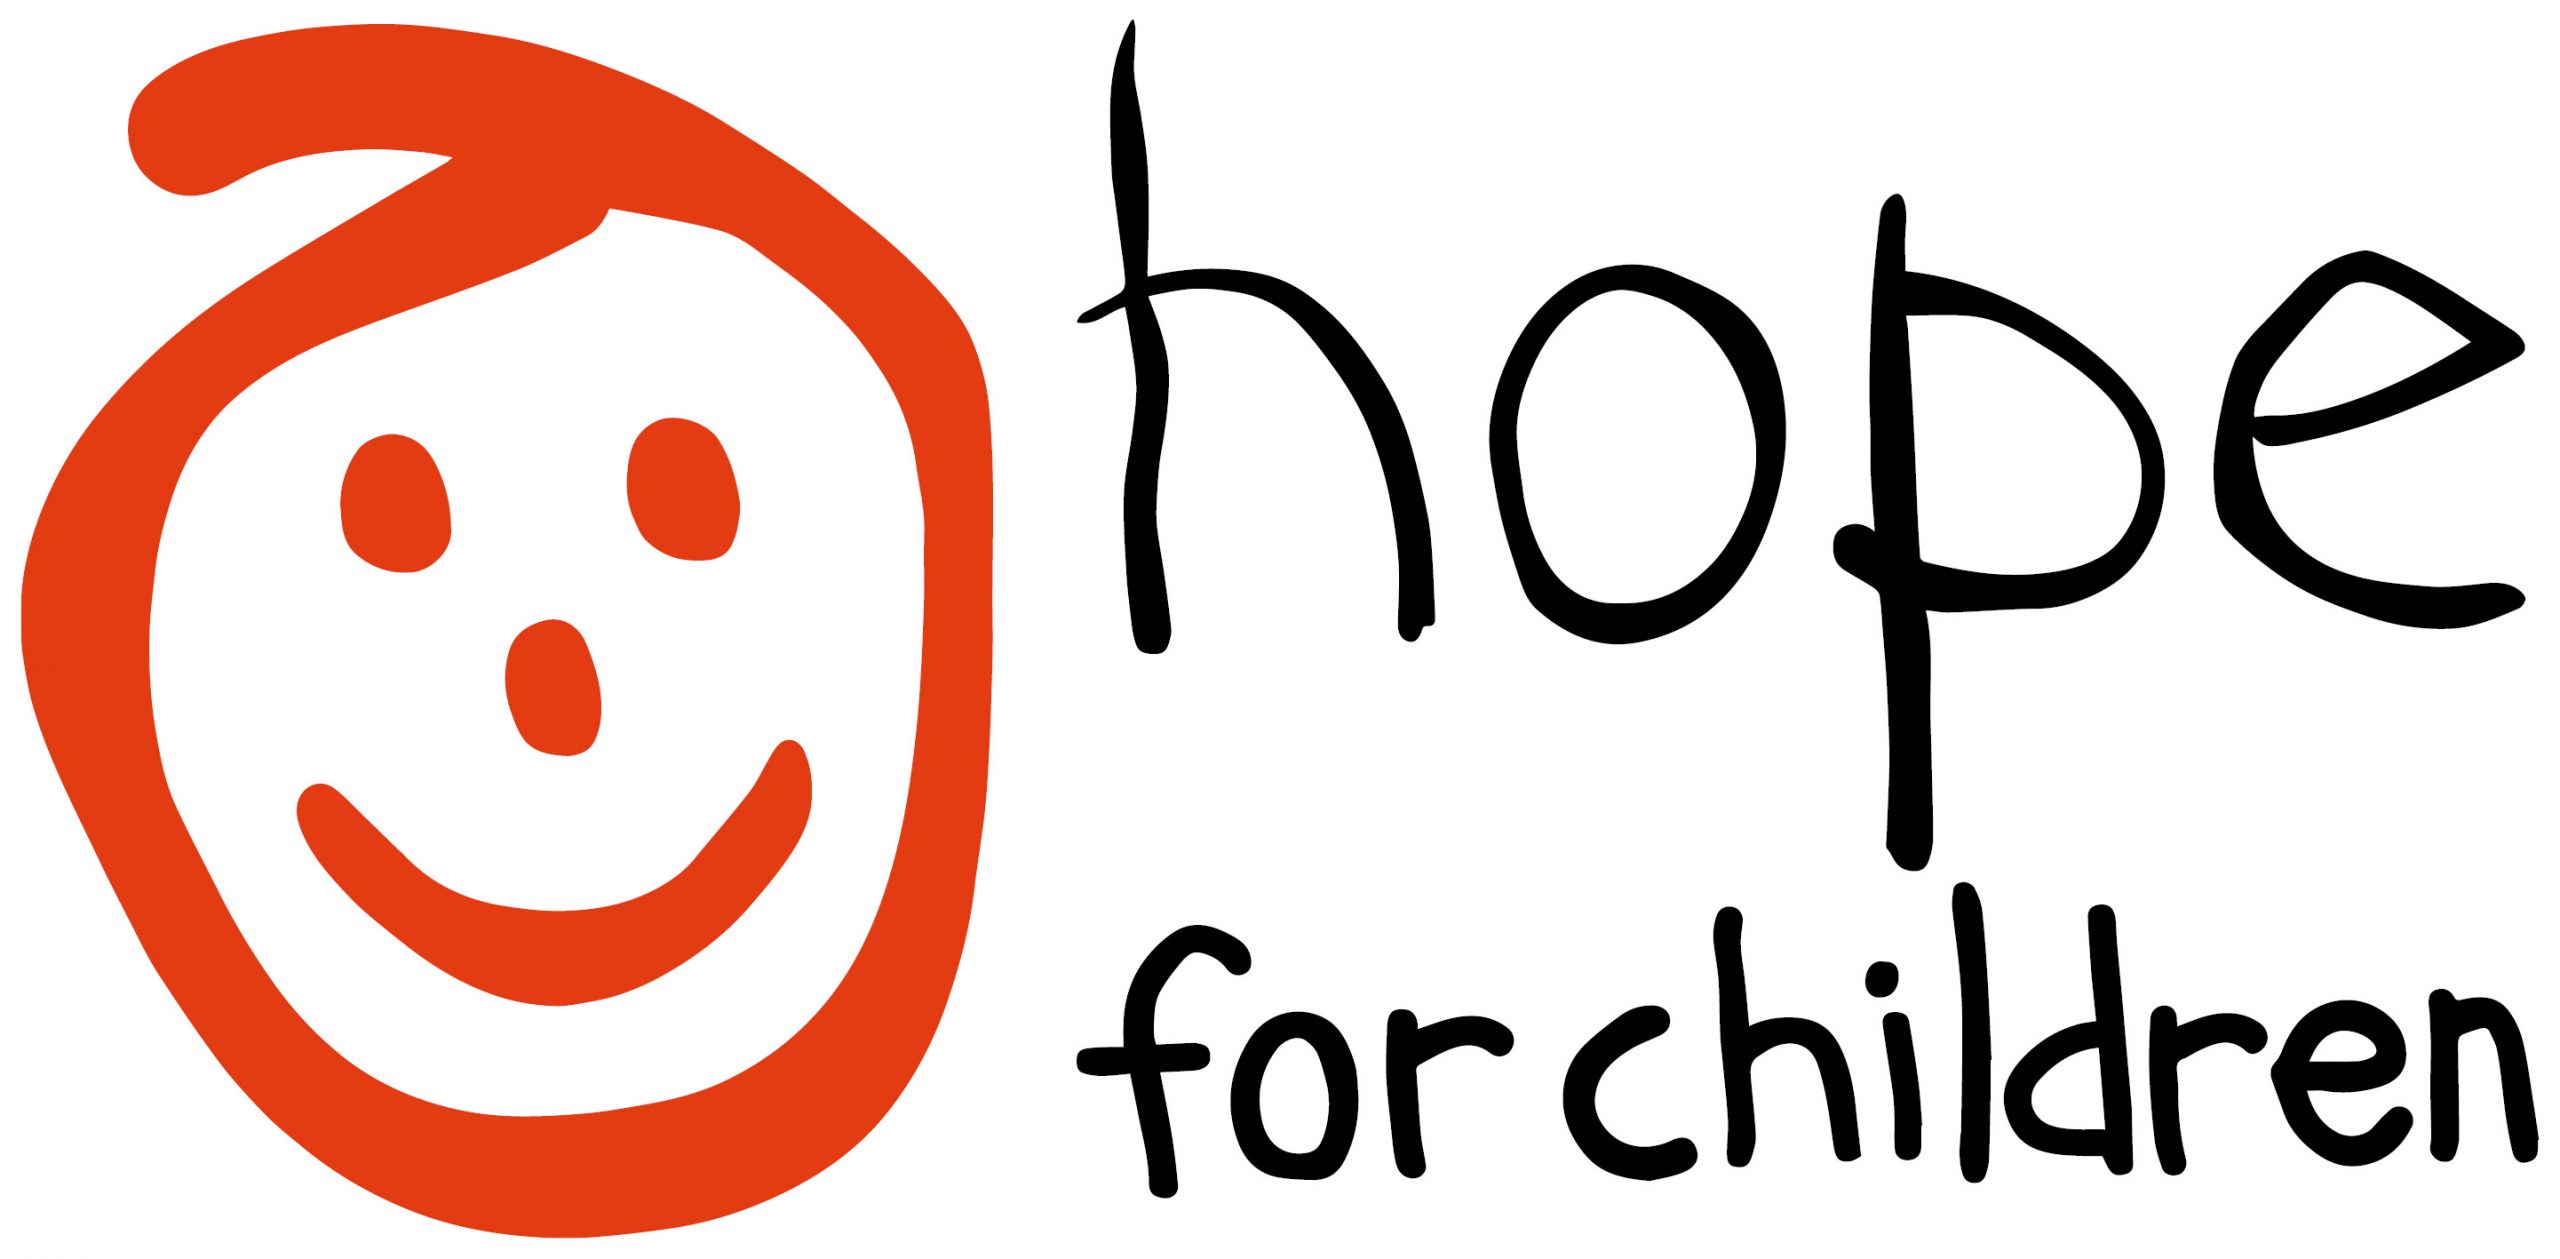 Το Hope For Children στήριξε πέρσι πέραν των 130 ανάδοχων οικογενειών